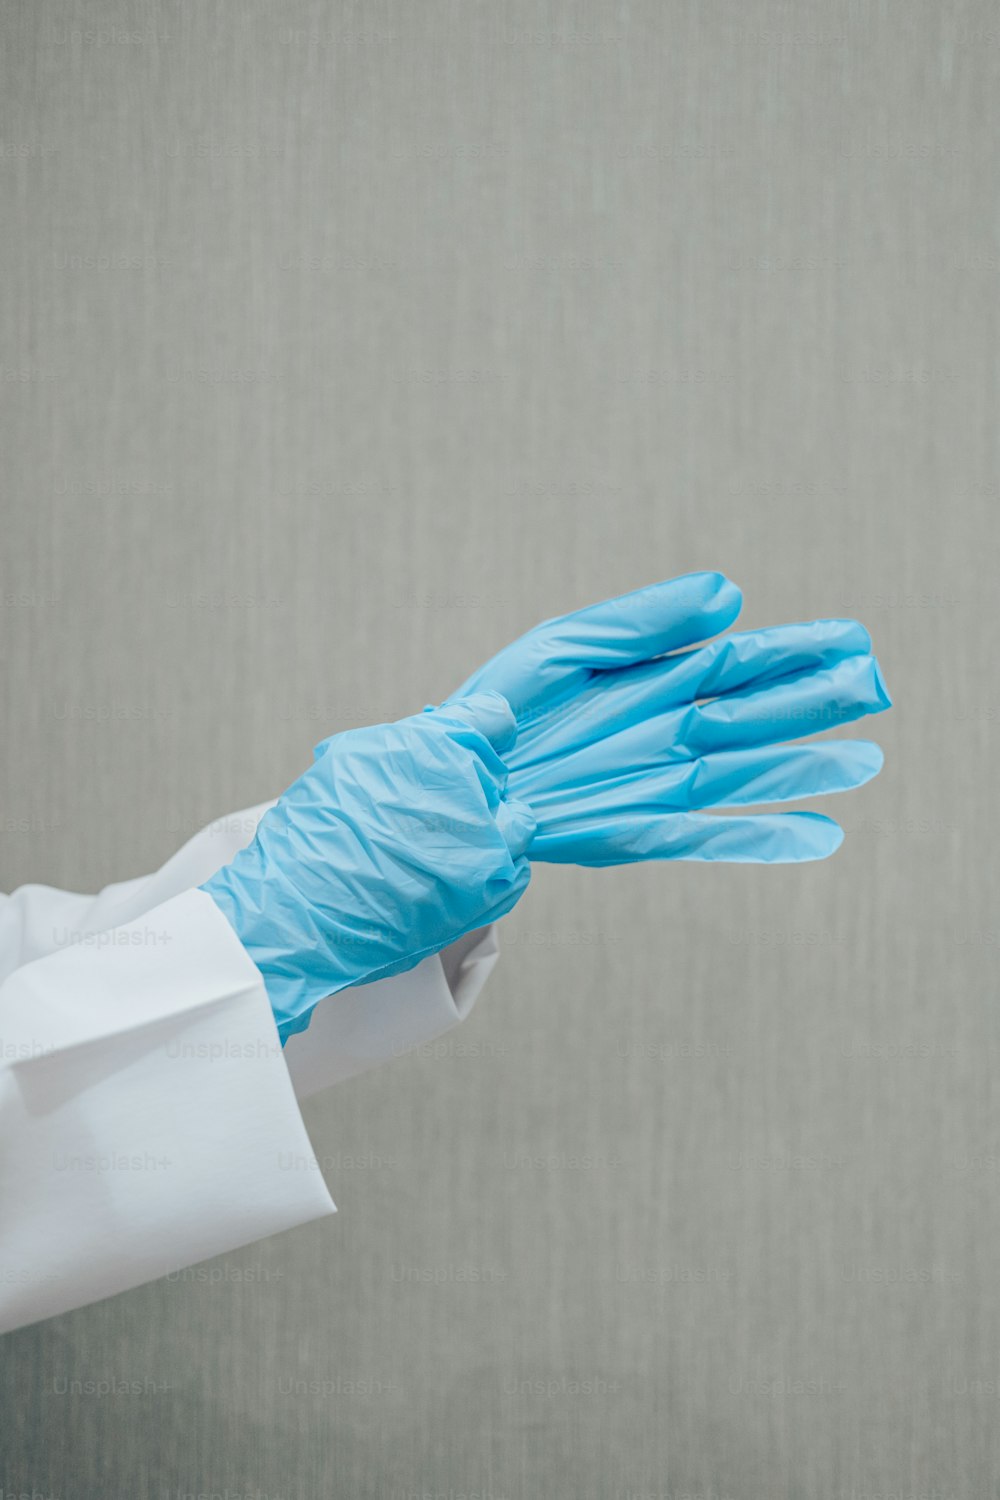 eine Person in einem weißen Kittel und blauen Handschuhen